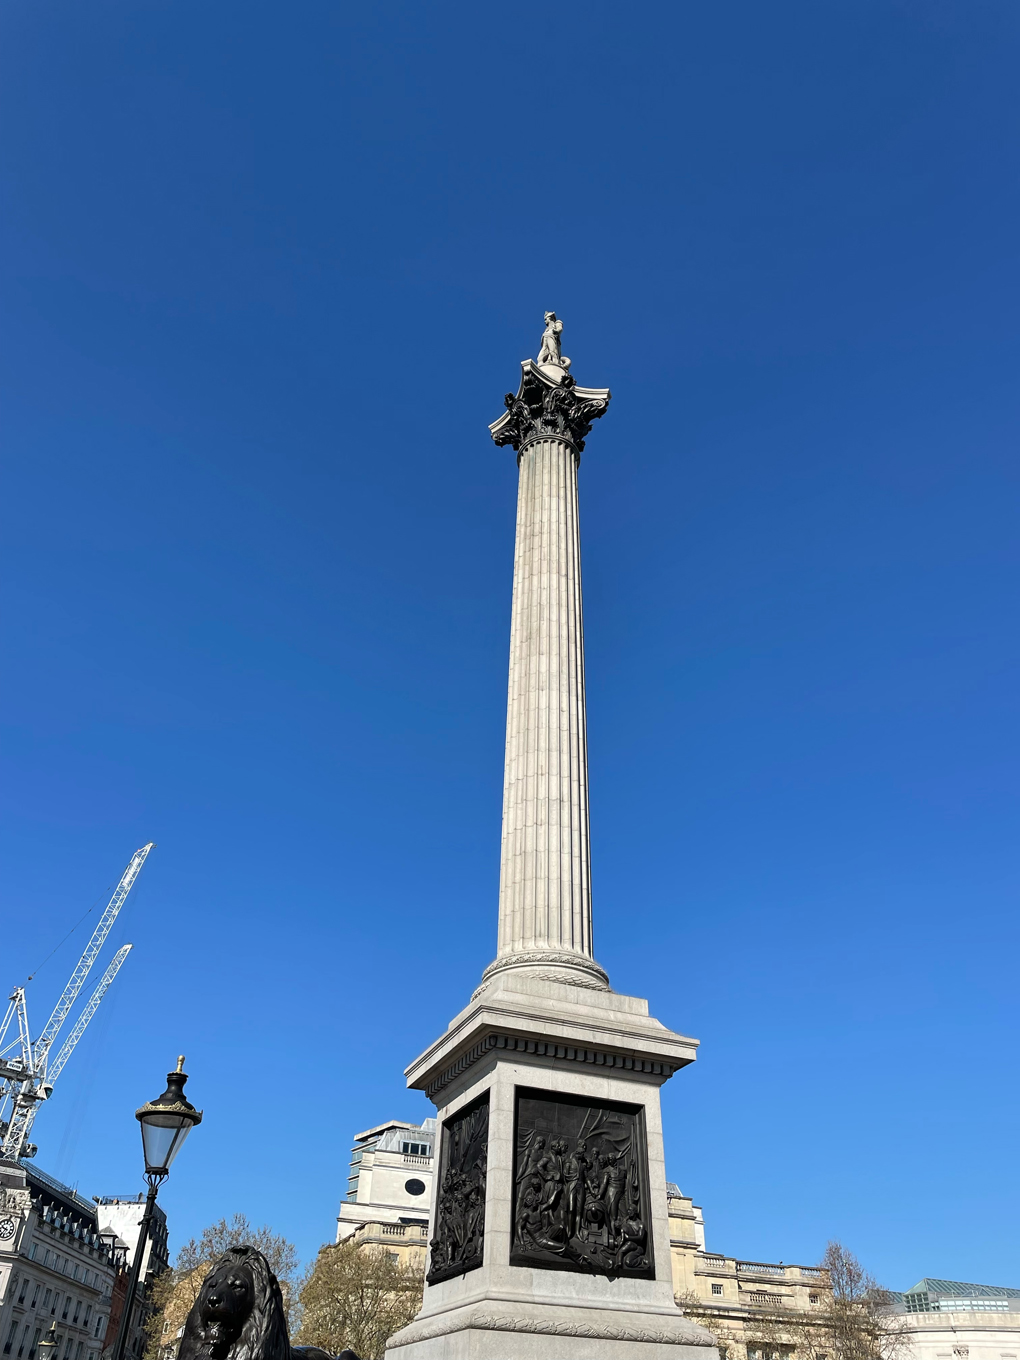 Nelson’s column against a clear blue sky